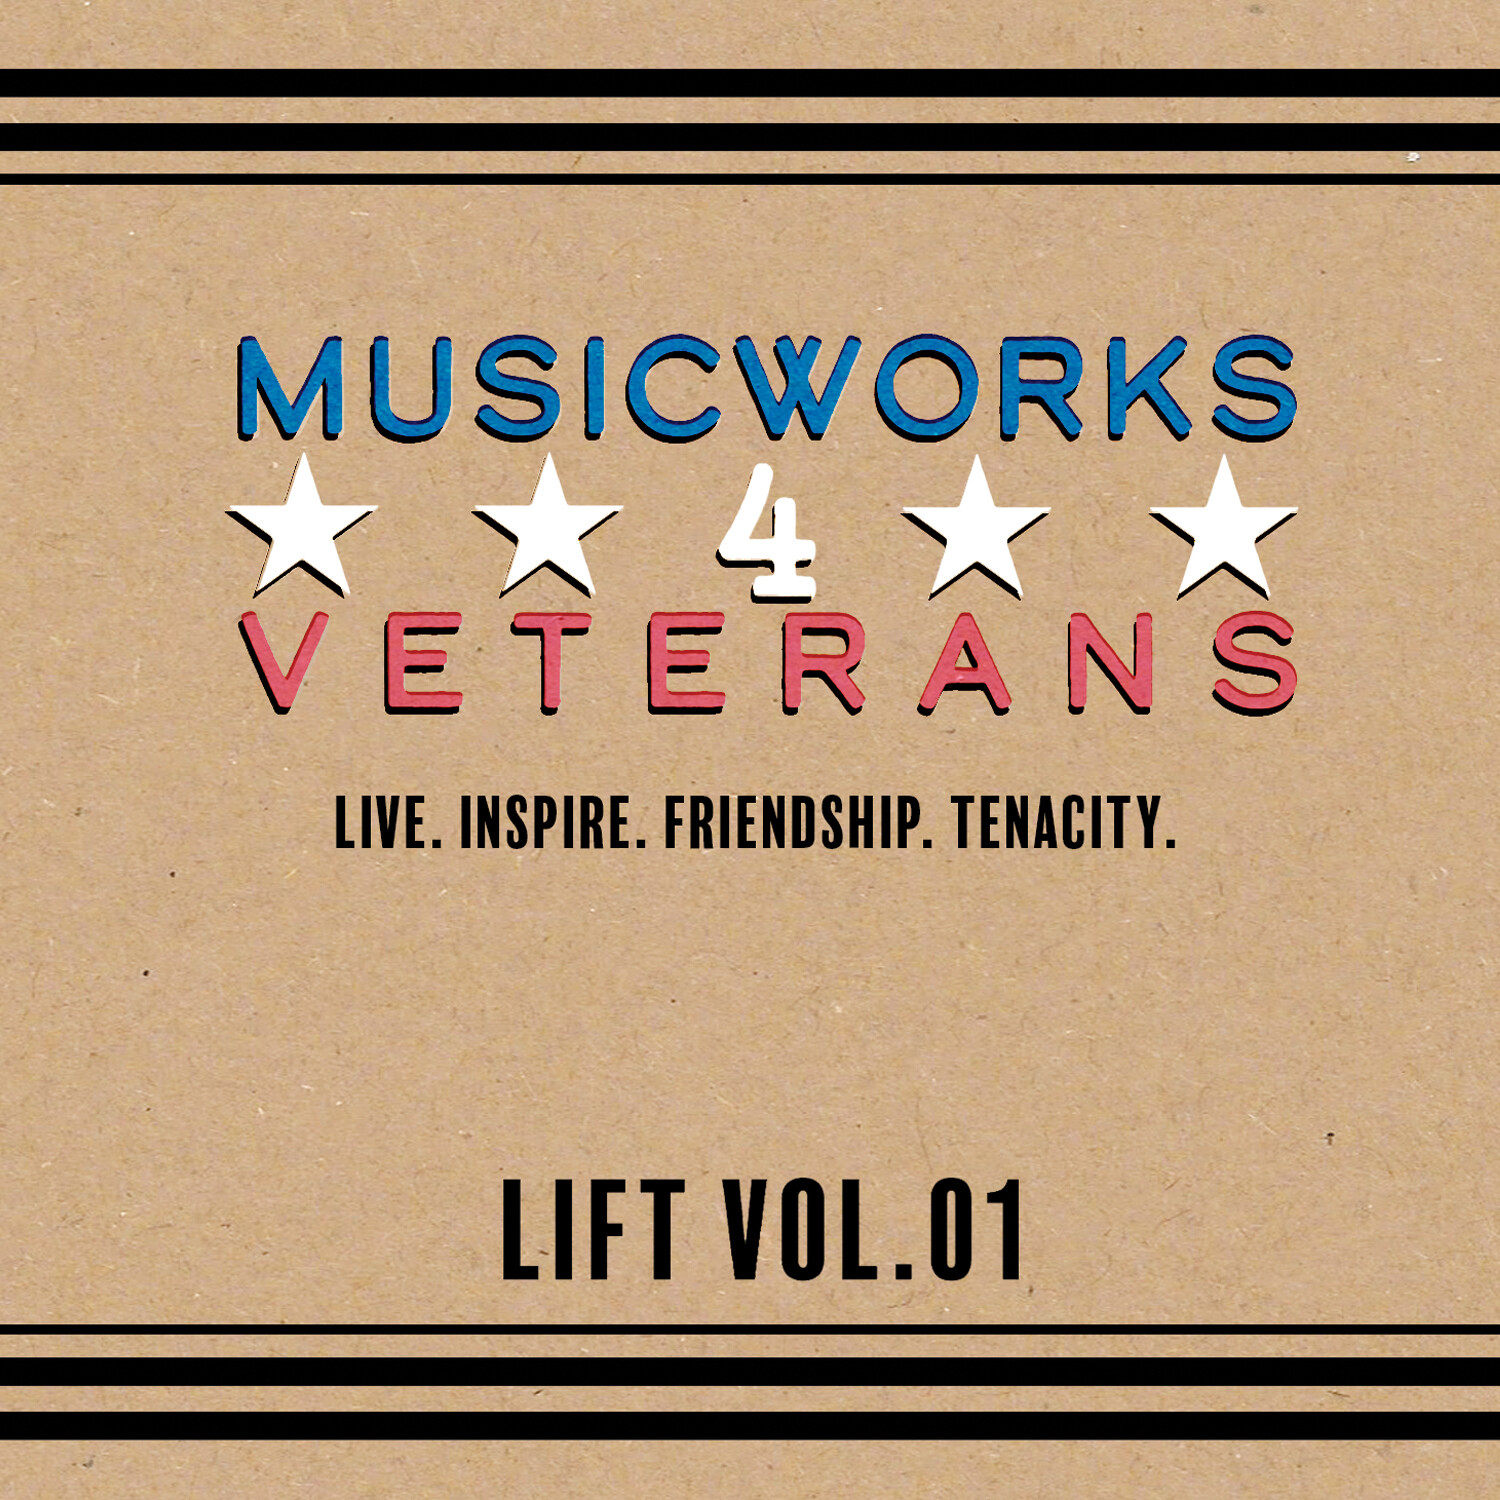 LIFT VOL. 01
[Music CD]